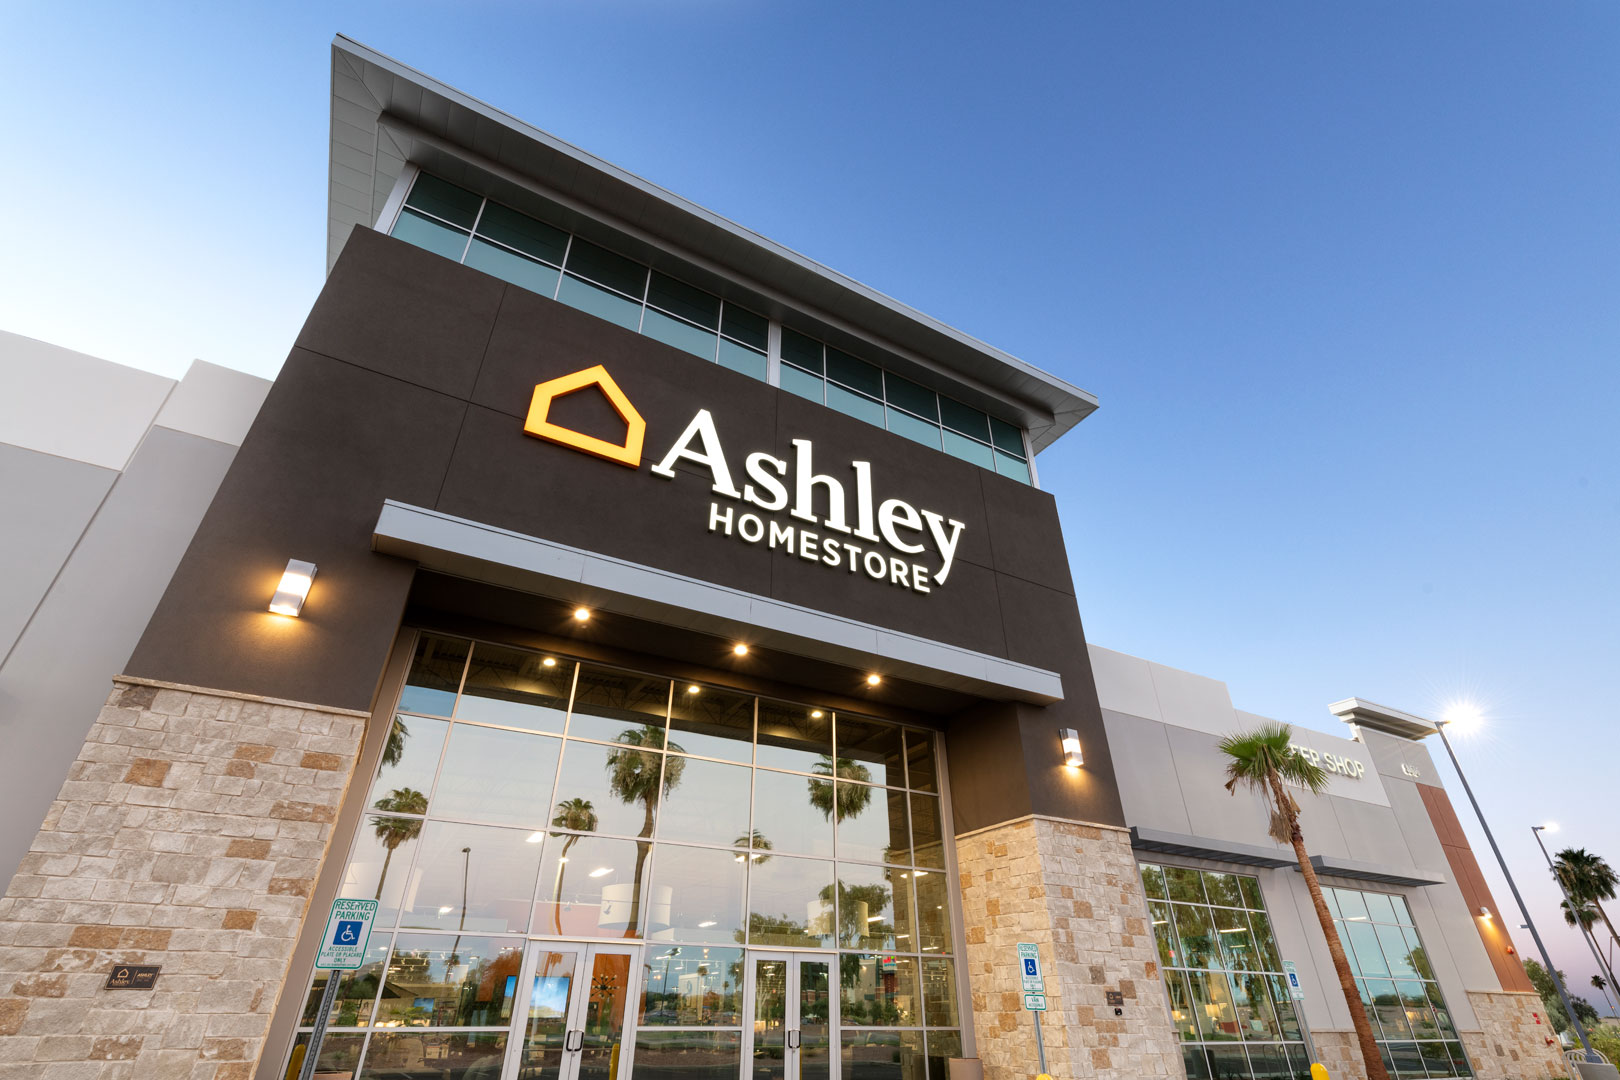 Ashley Furniture HomeStore | Cawley ArchitectsCawley Architects